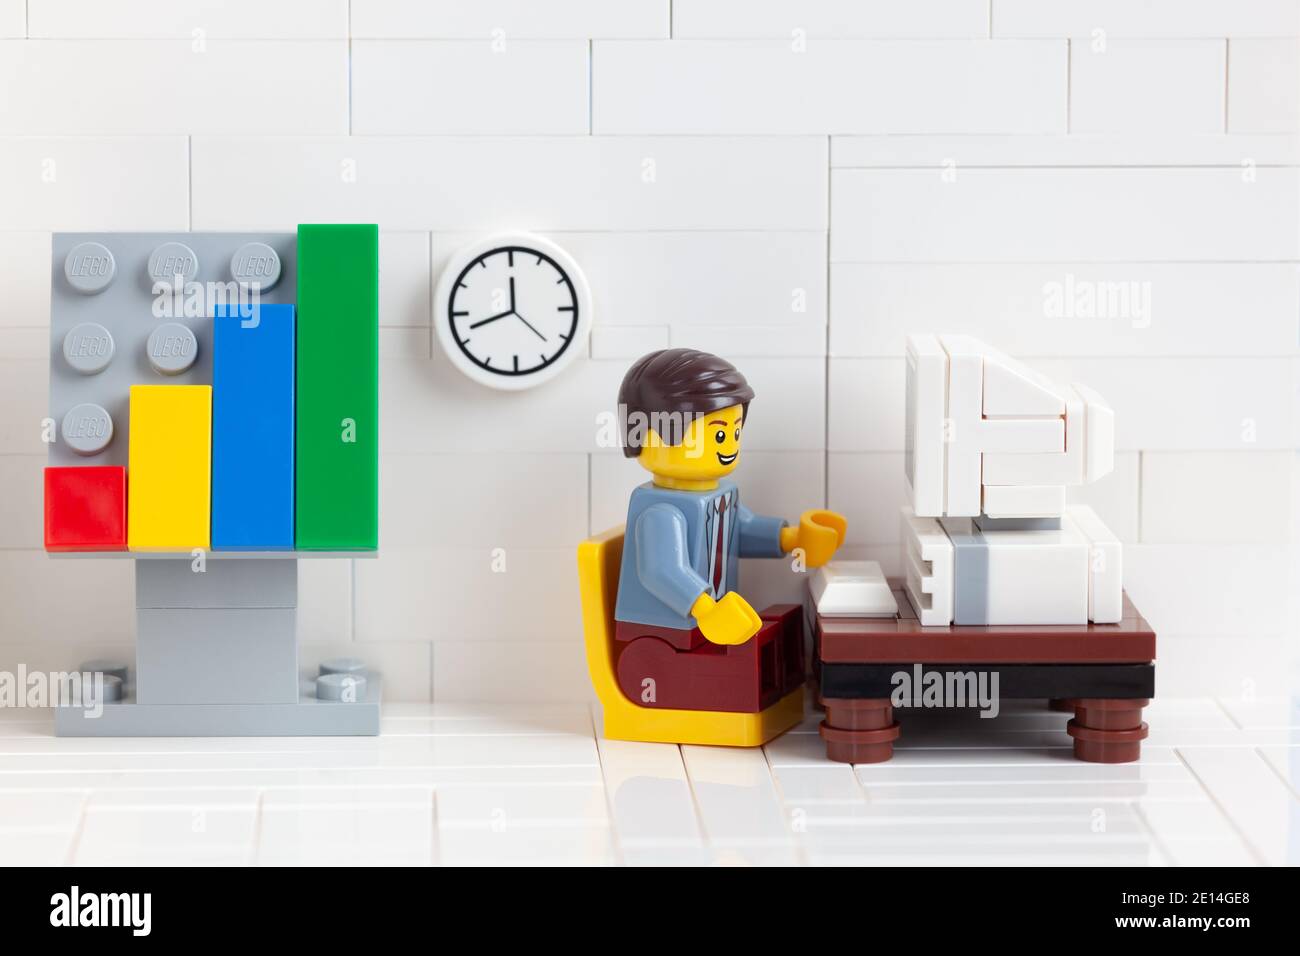 Tambow, Russische Föderation - 03. Januar 2021 Lego businesssperson minifiguren sitzen hinter einem Computer und arbeiten daran. Stockfoto